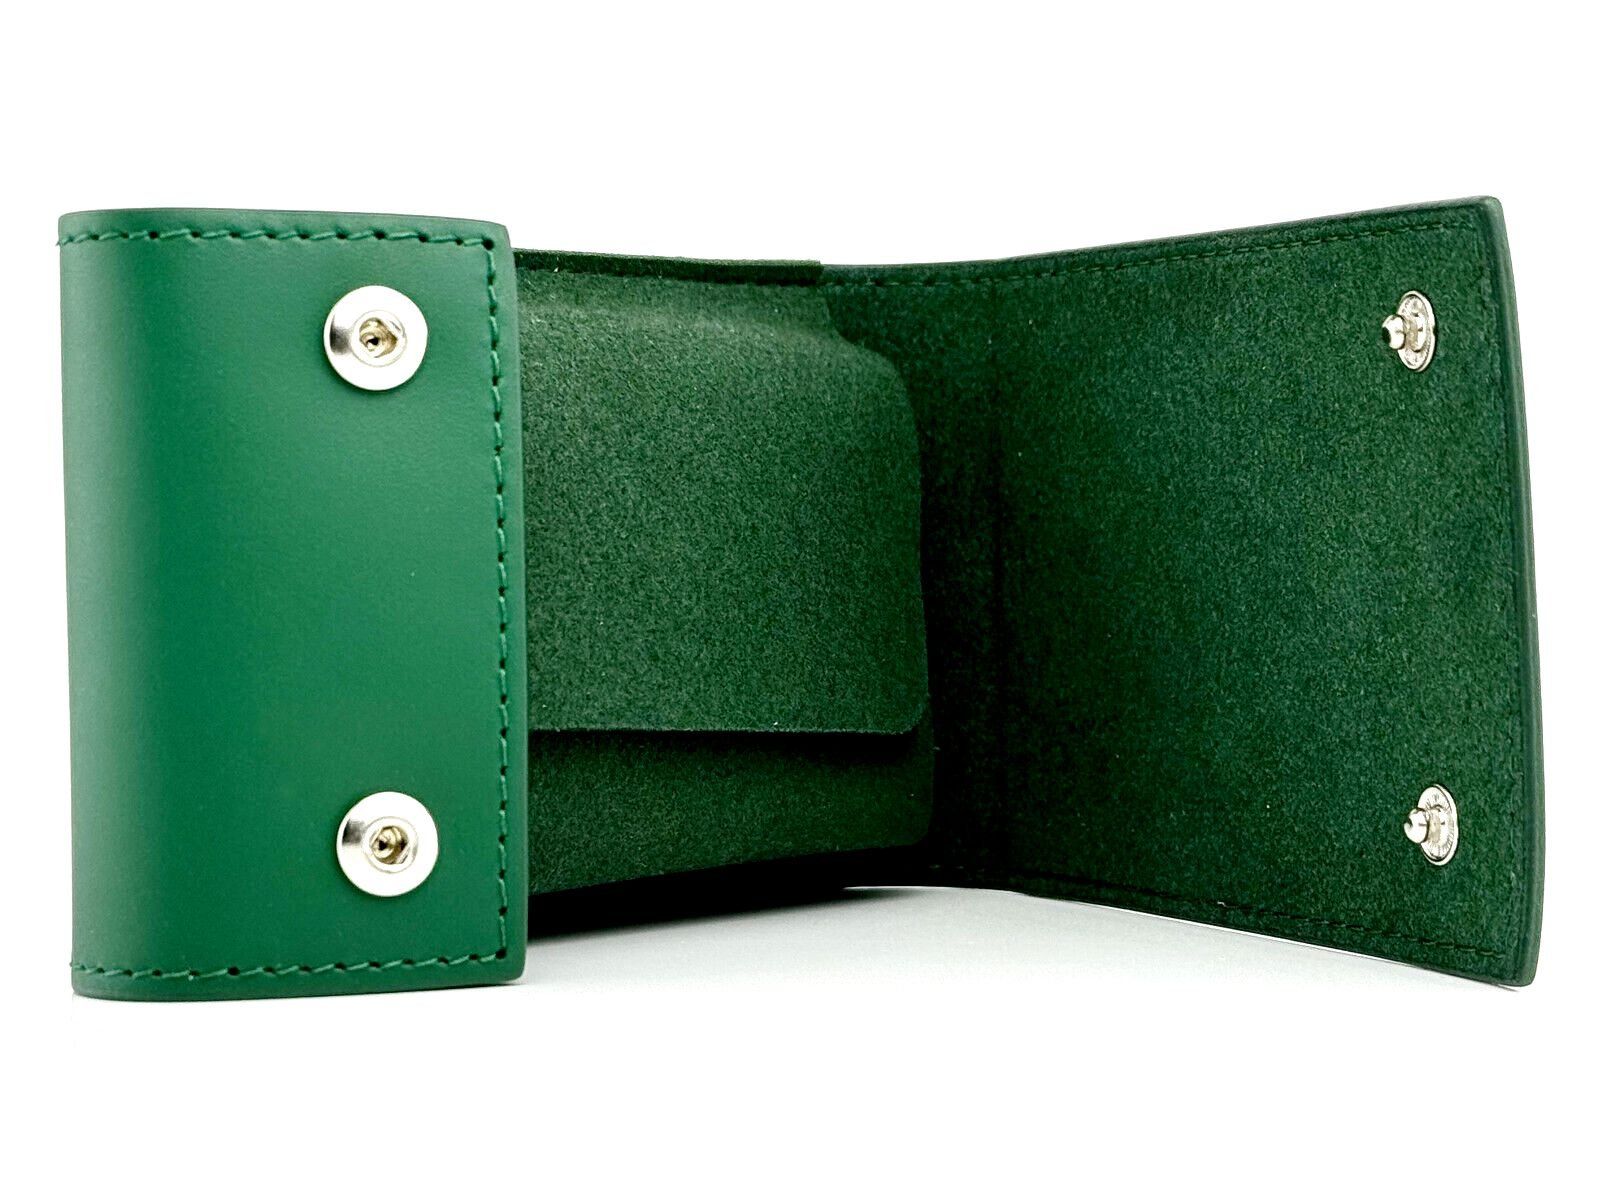 Rolex Uhrenetui Grün